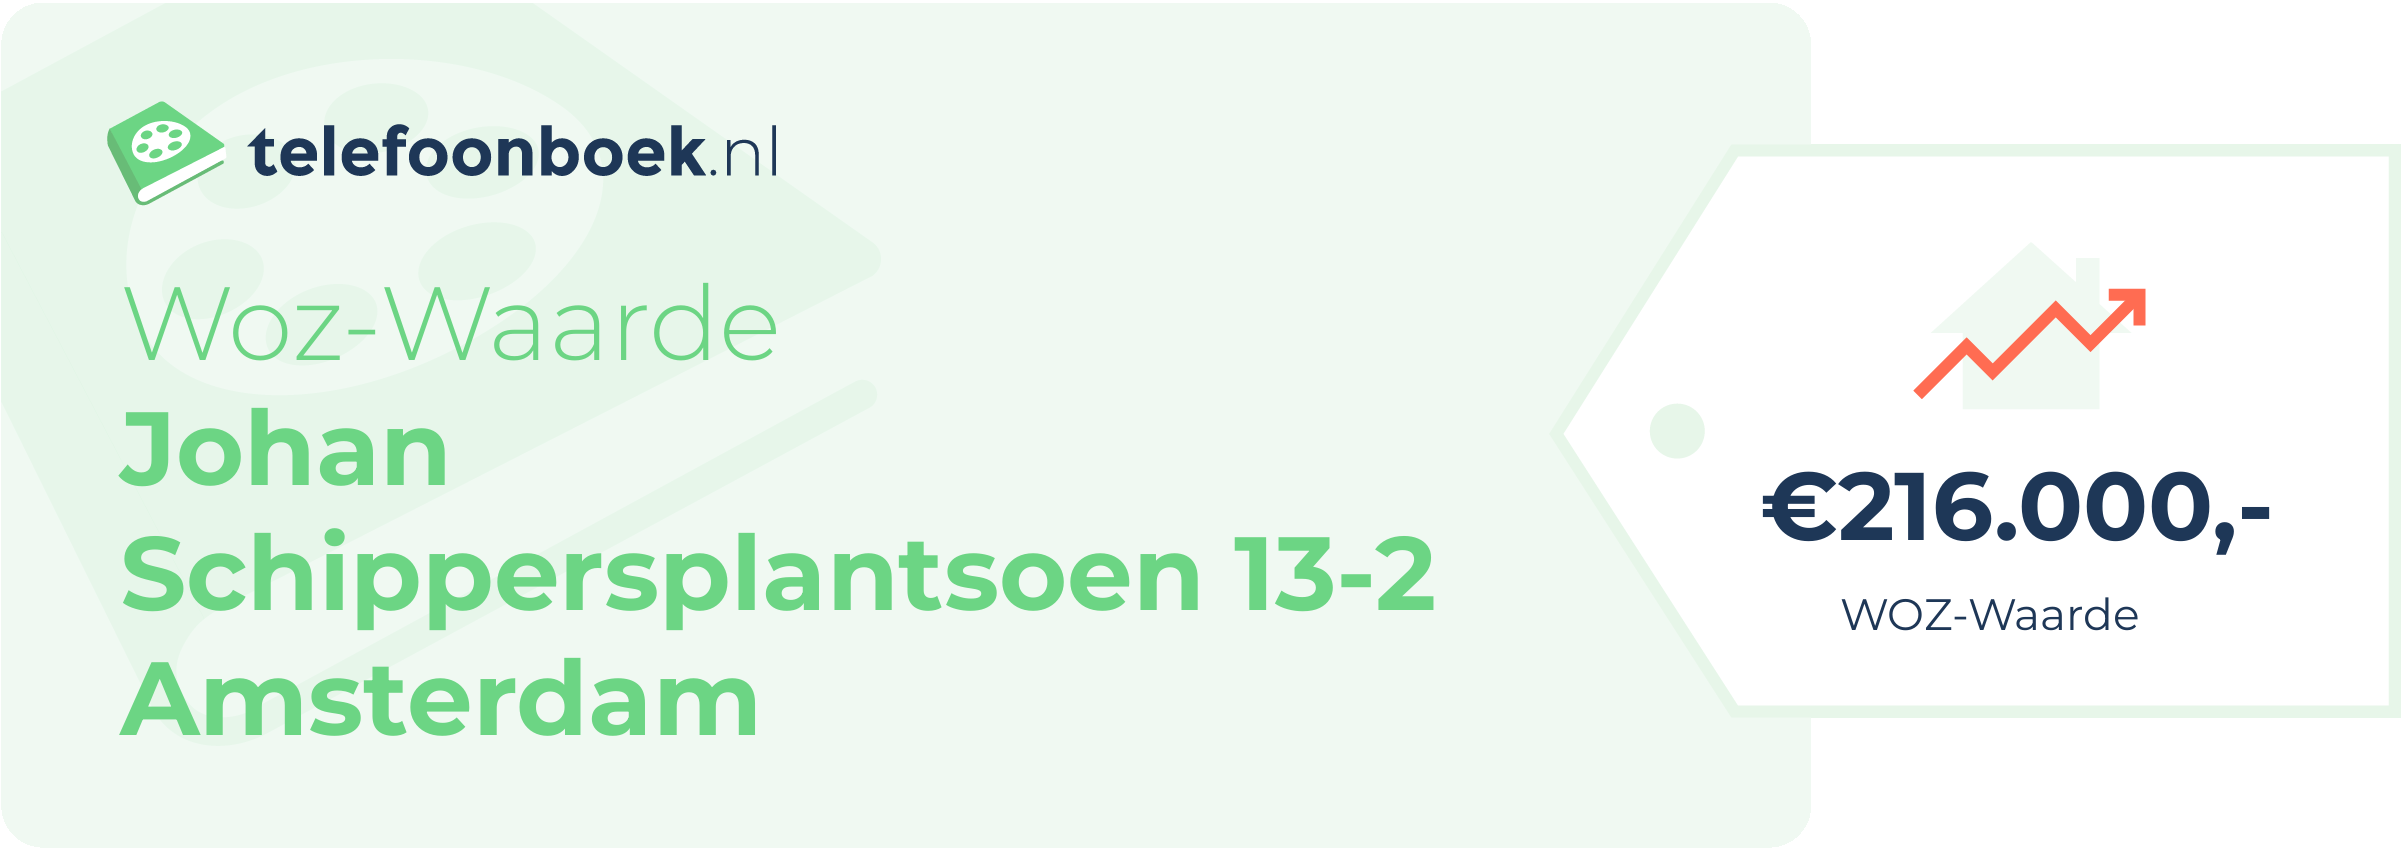 WOZ-waarde Johan Schippersplantsoen 13-2 Amsterdam